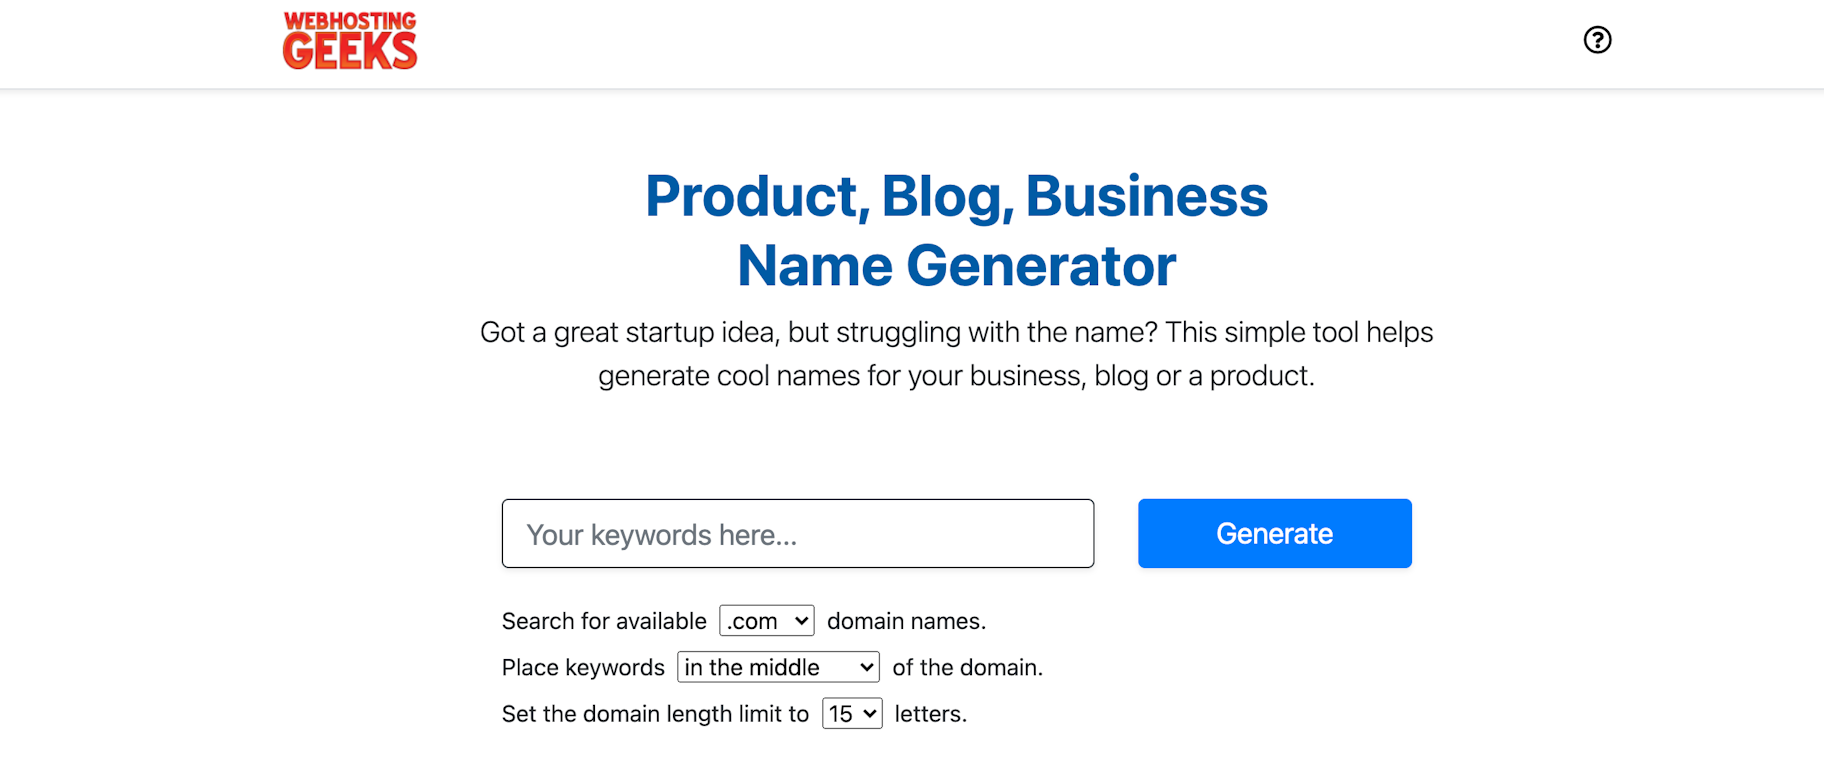 Webhostinggeeks business name generator